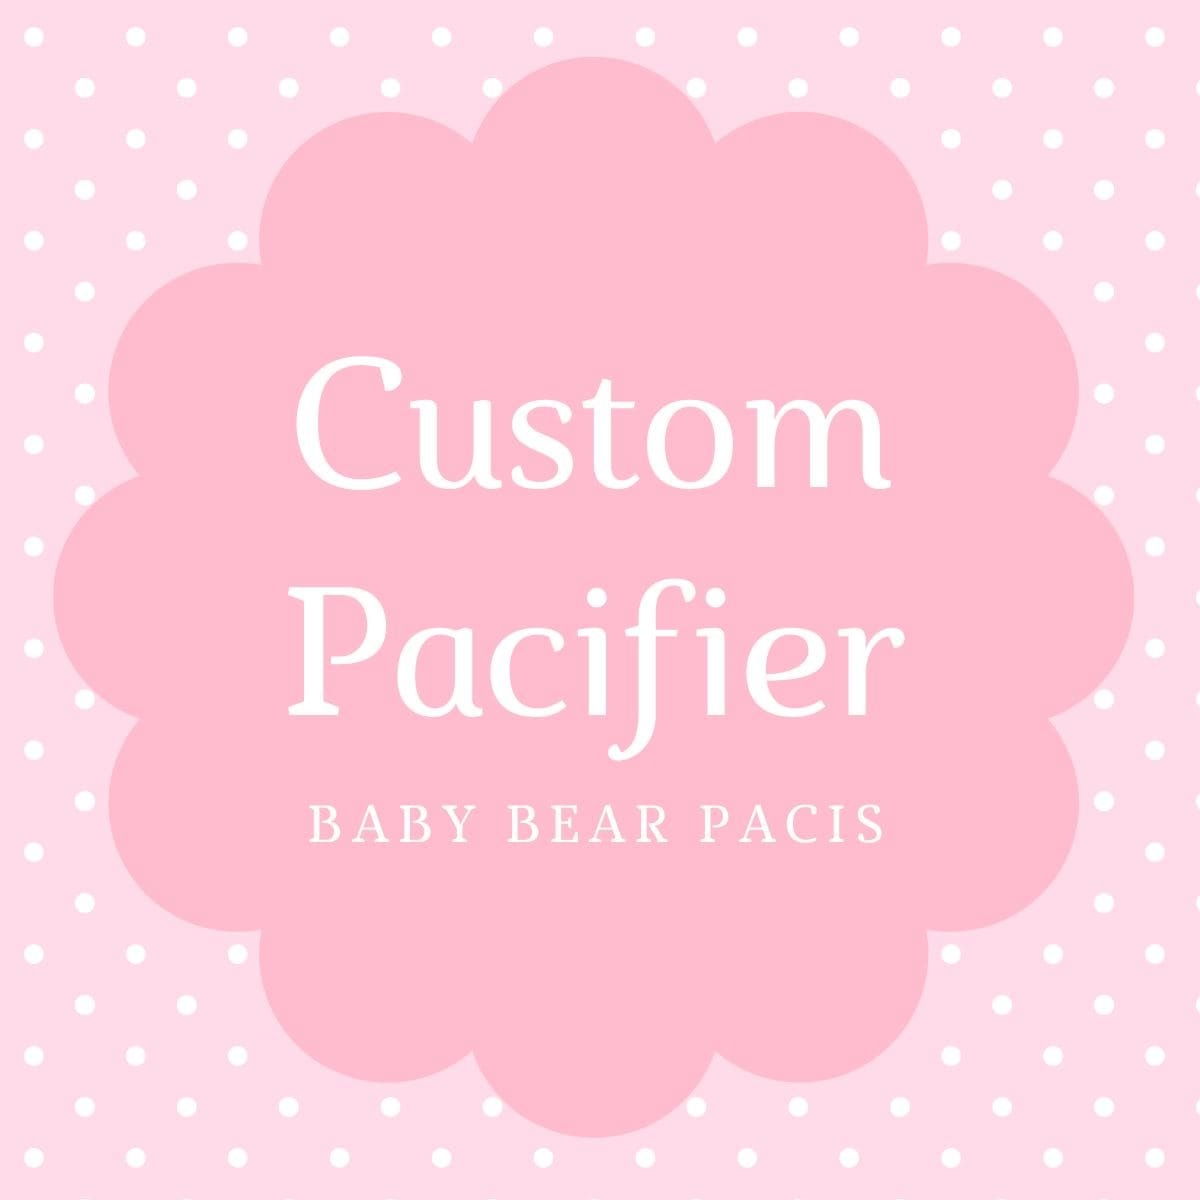 Baby Bear Pacis Custom Adult Pacifier - BBP